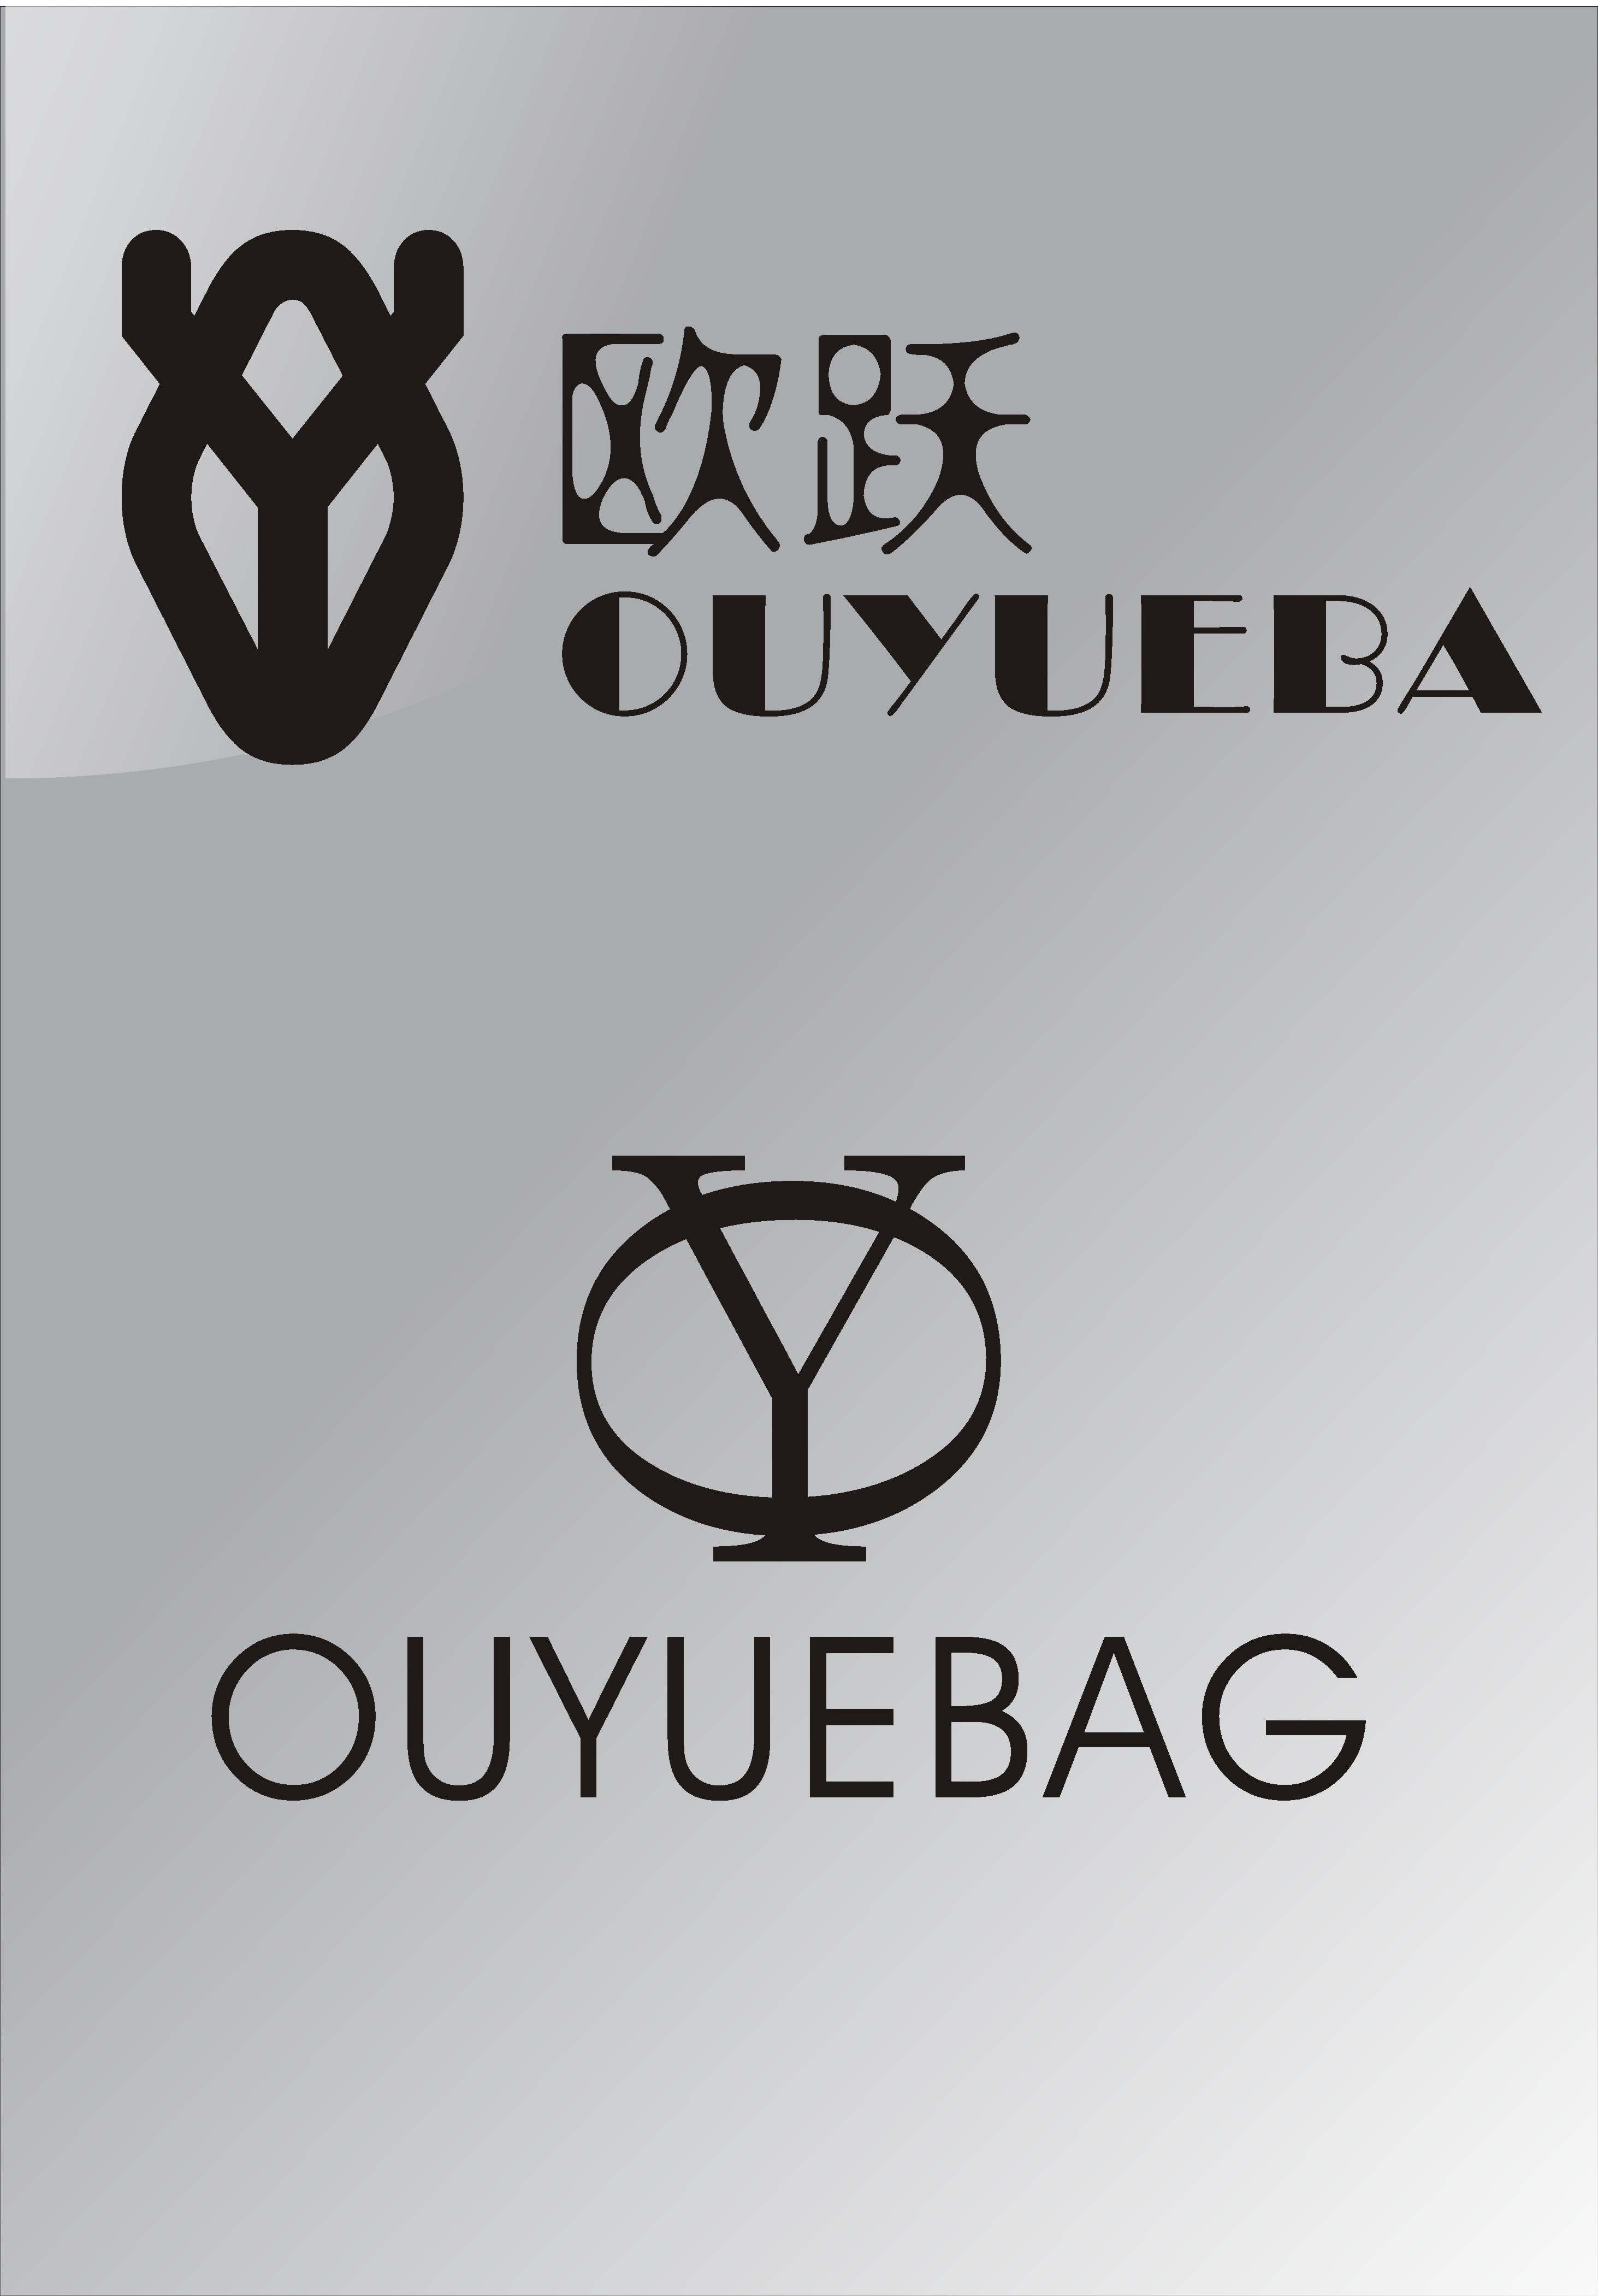 欧跃箱包皮件有限公司logo和商标中英文设计